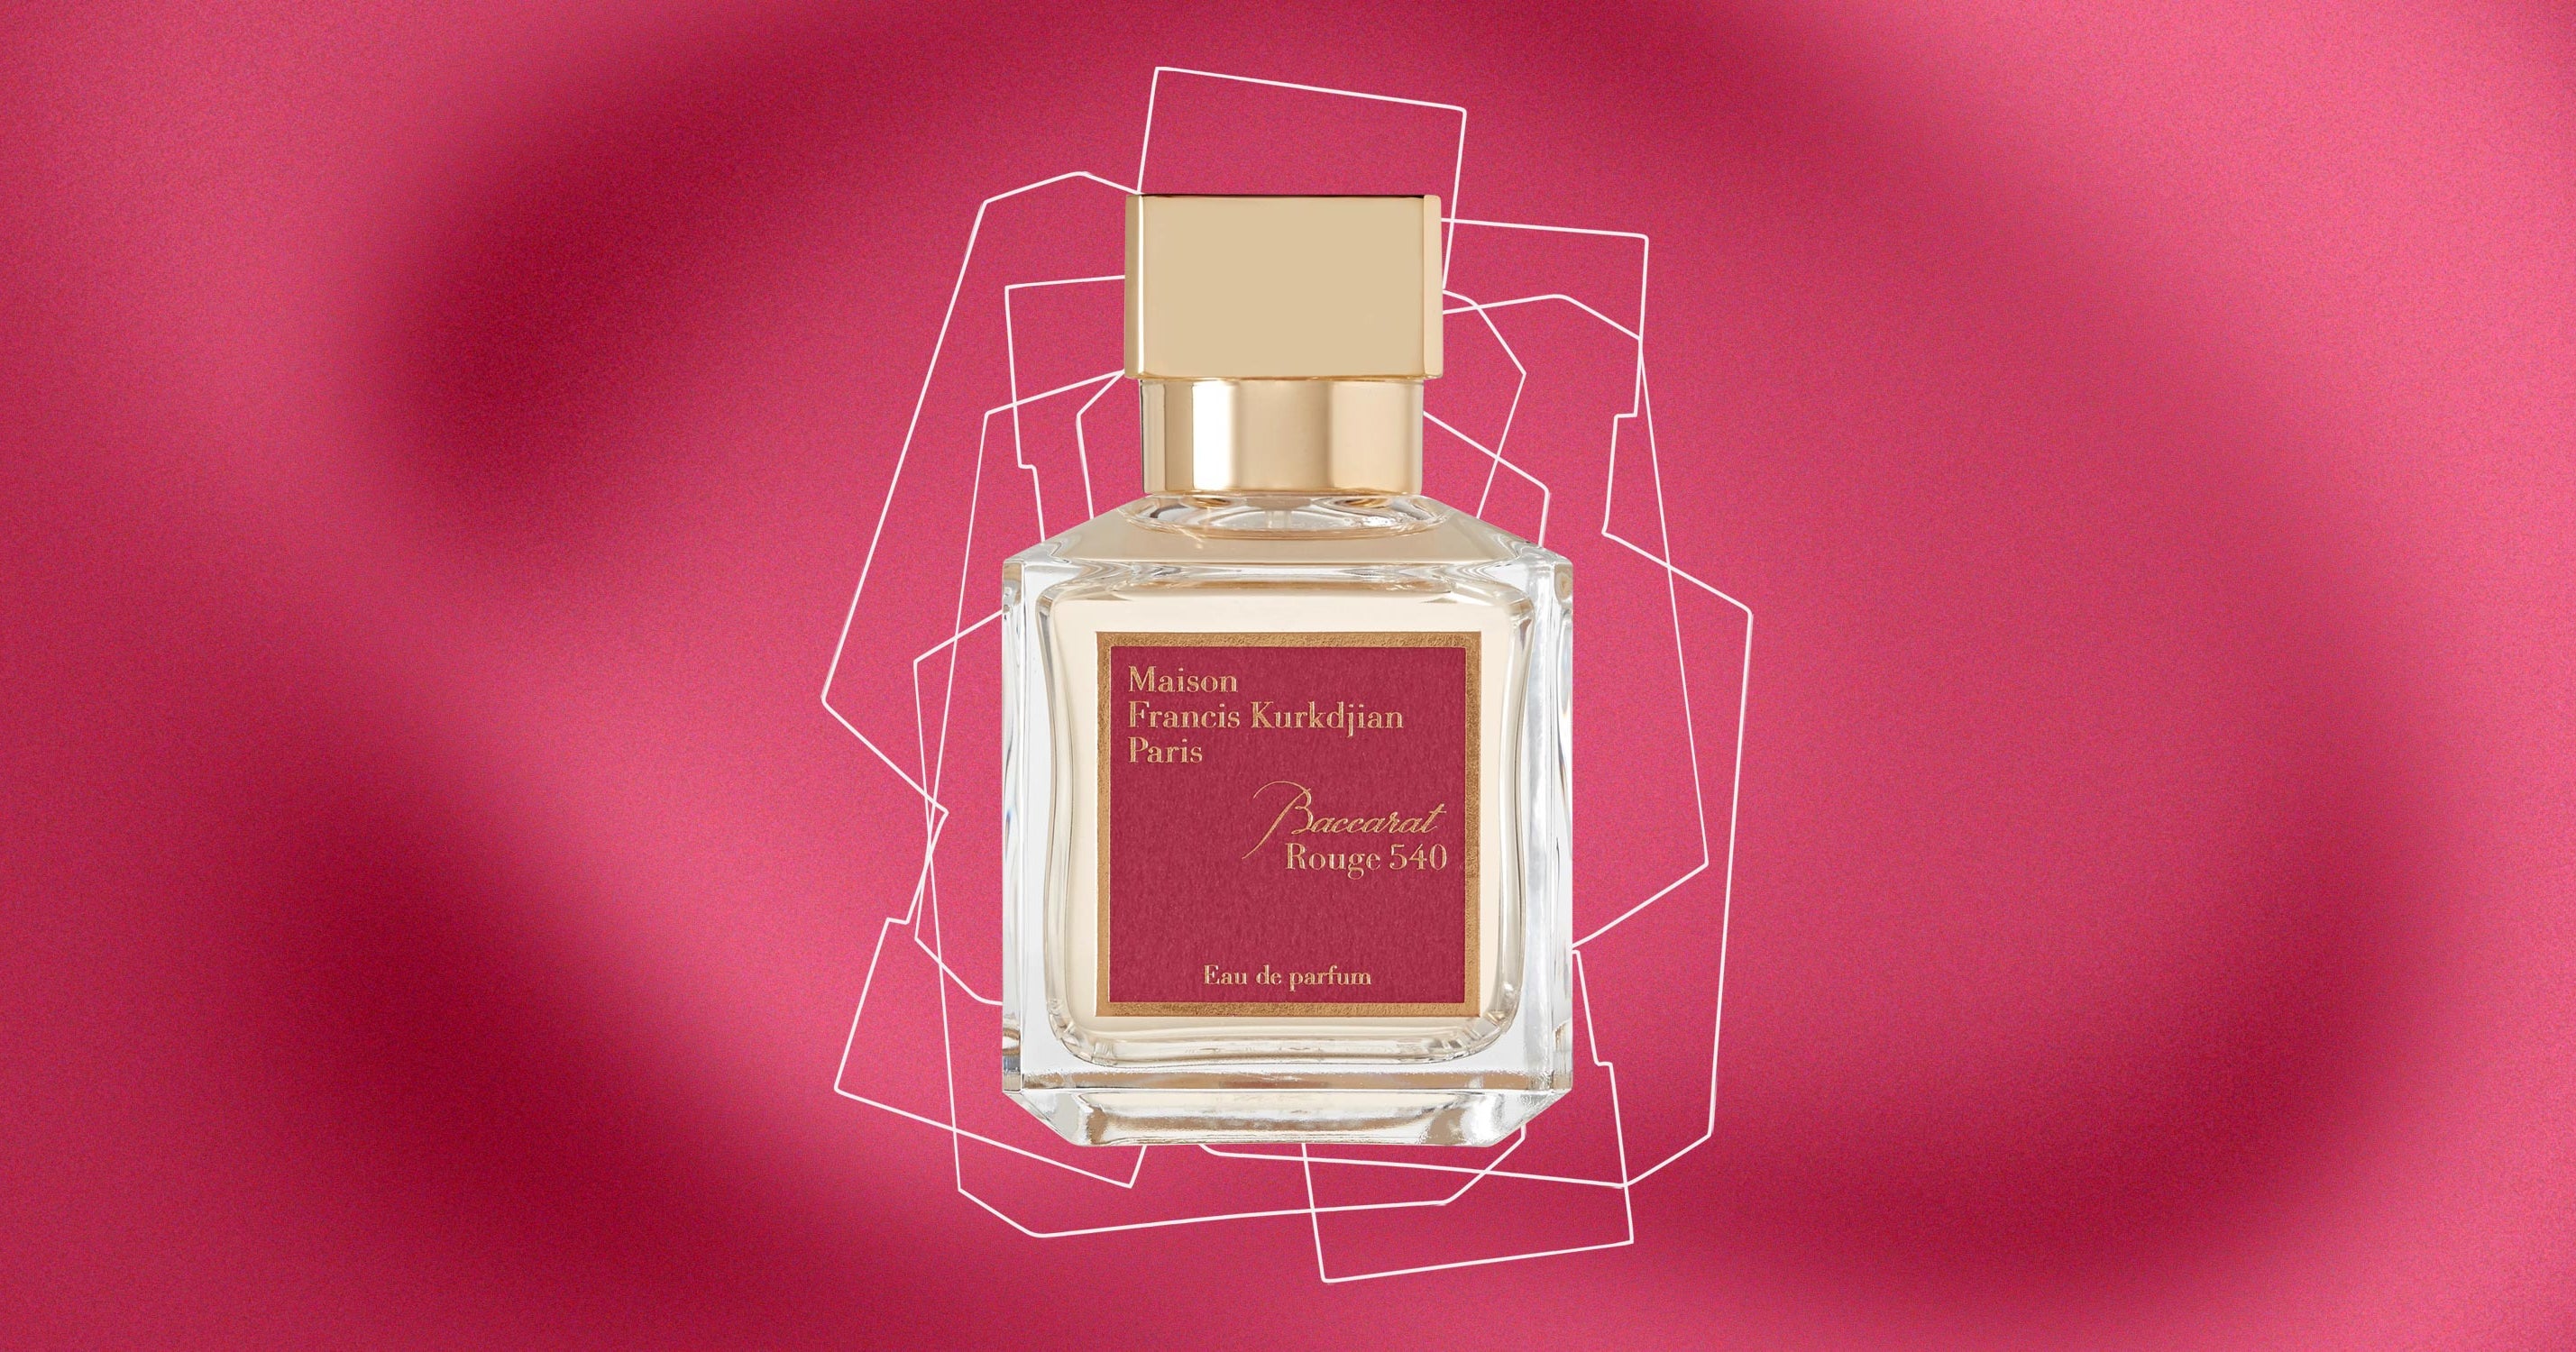 Maison Francis Kurkdjian Archives - The Perfume Society